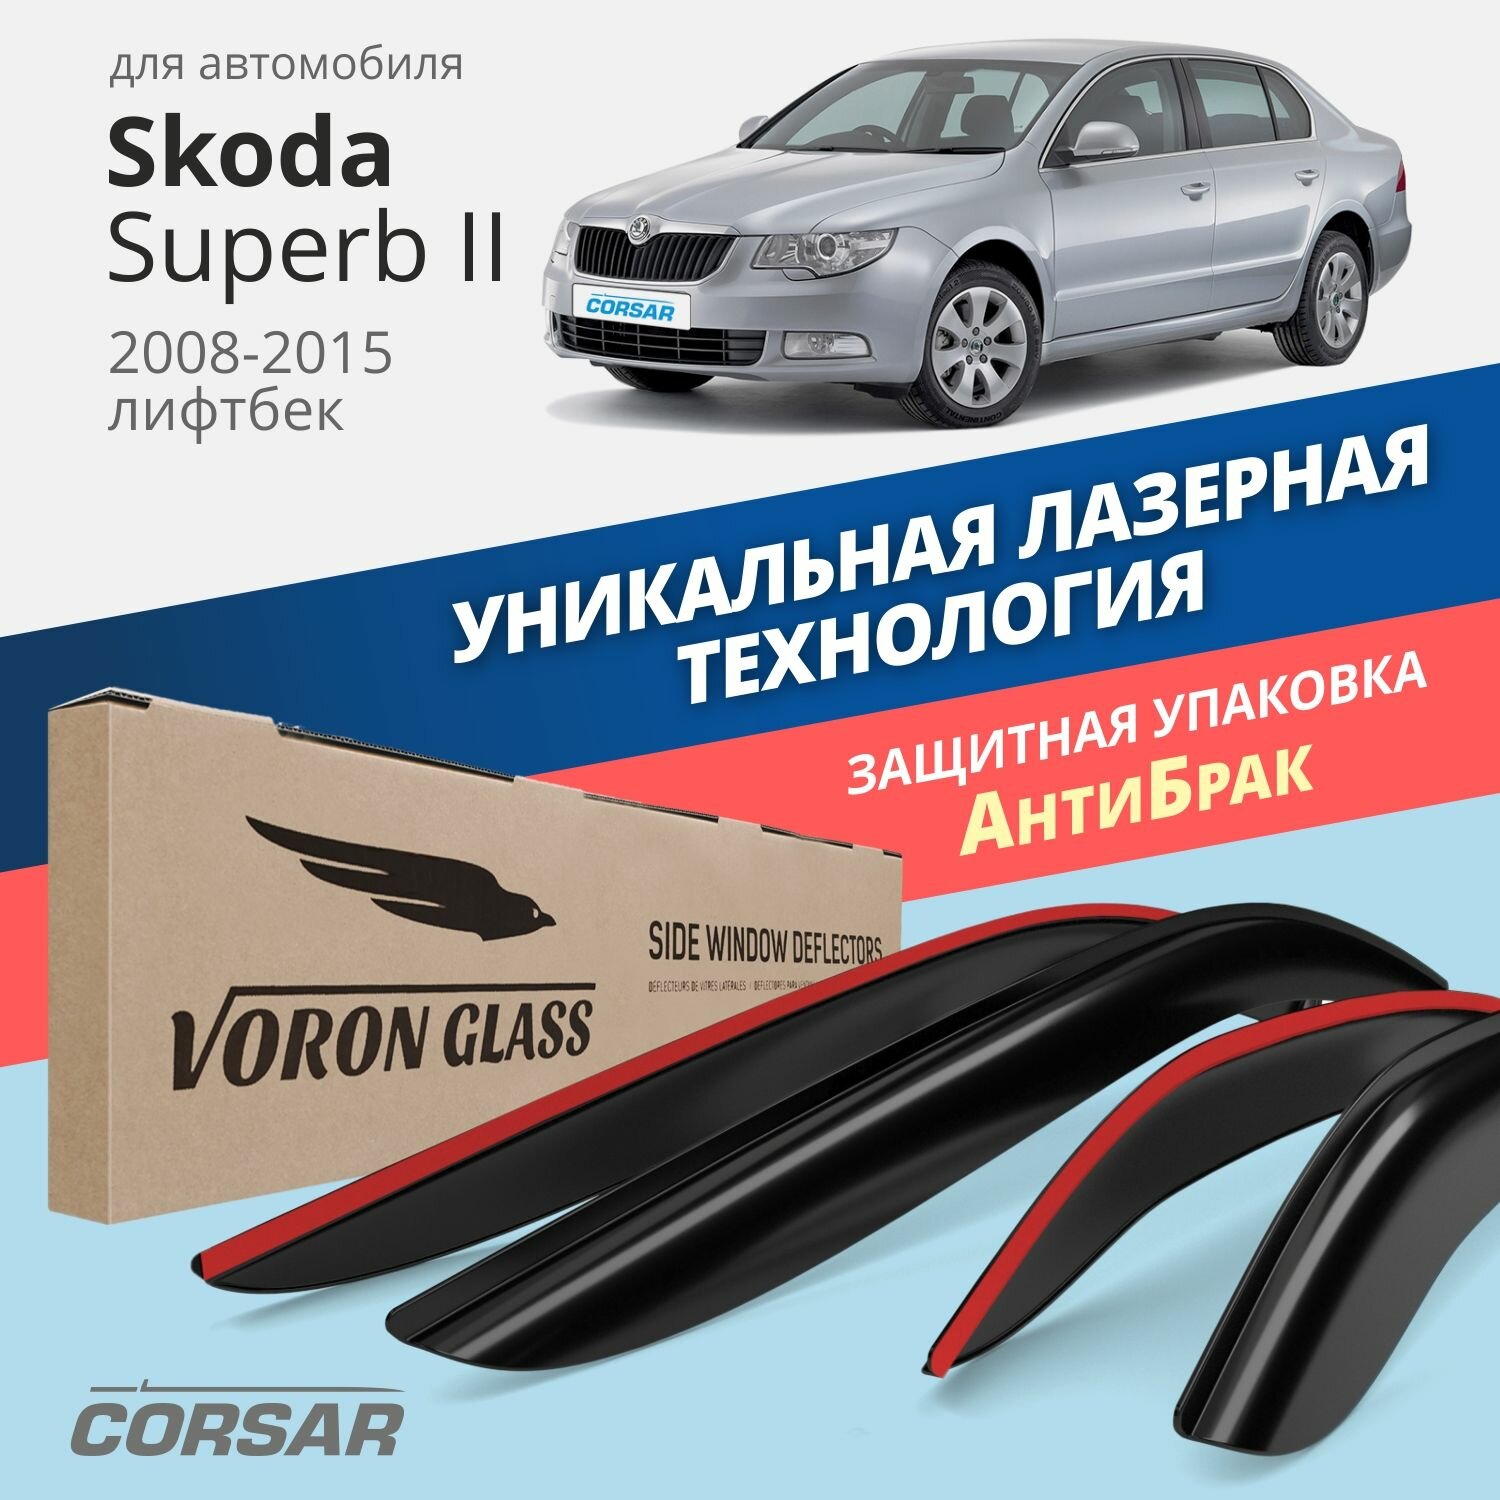 Дефлекторы окон Voron Glass серия Corsar для Skoda Superb II 2008-2015 лифтбек, накладные 4 шт.